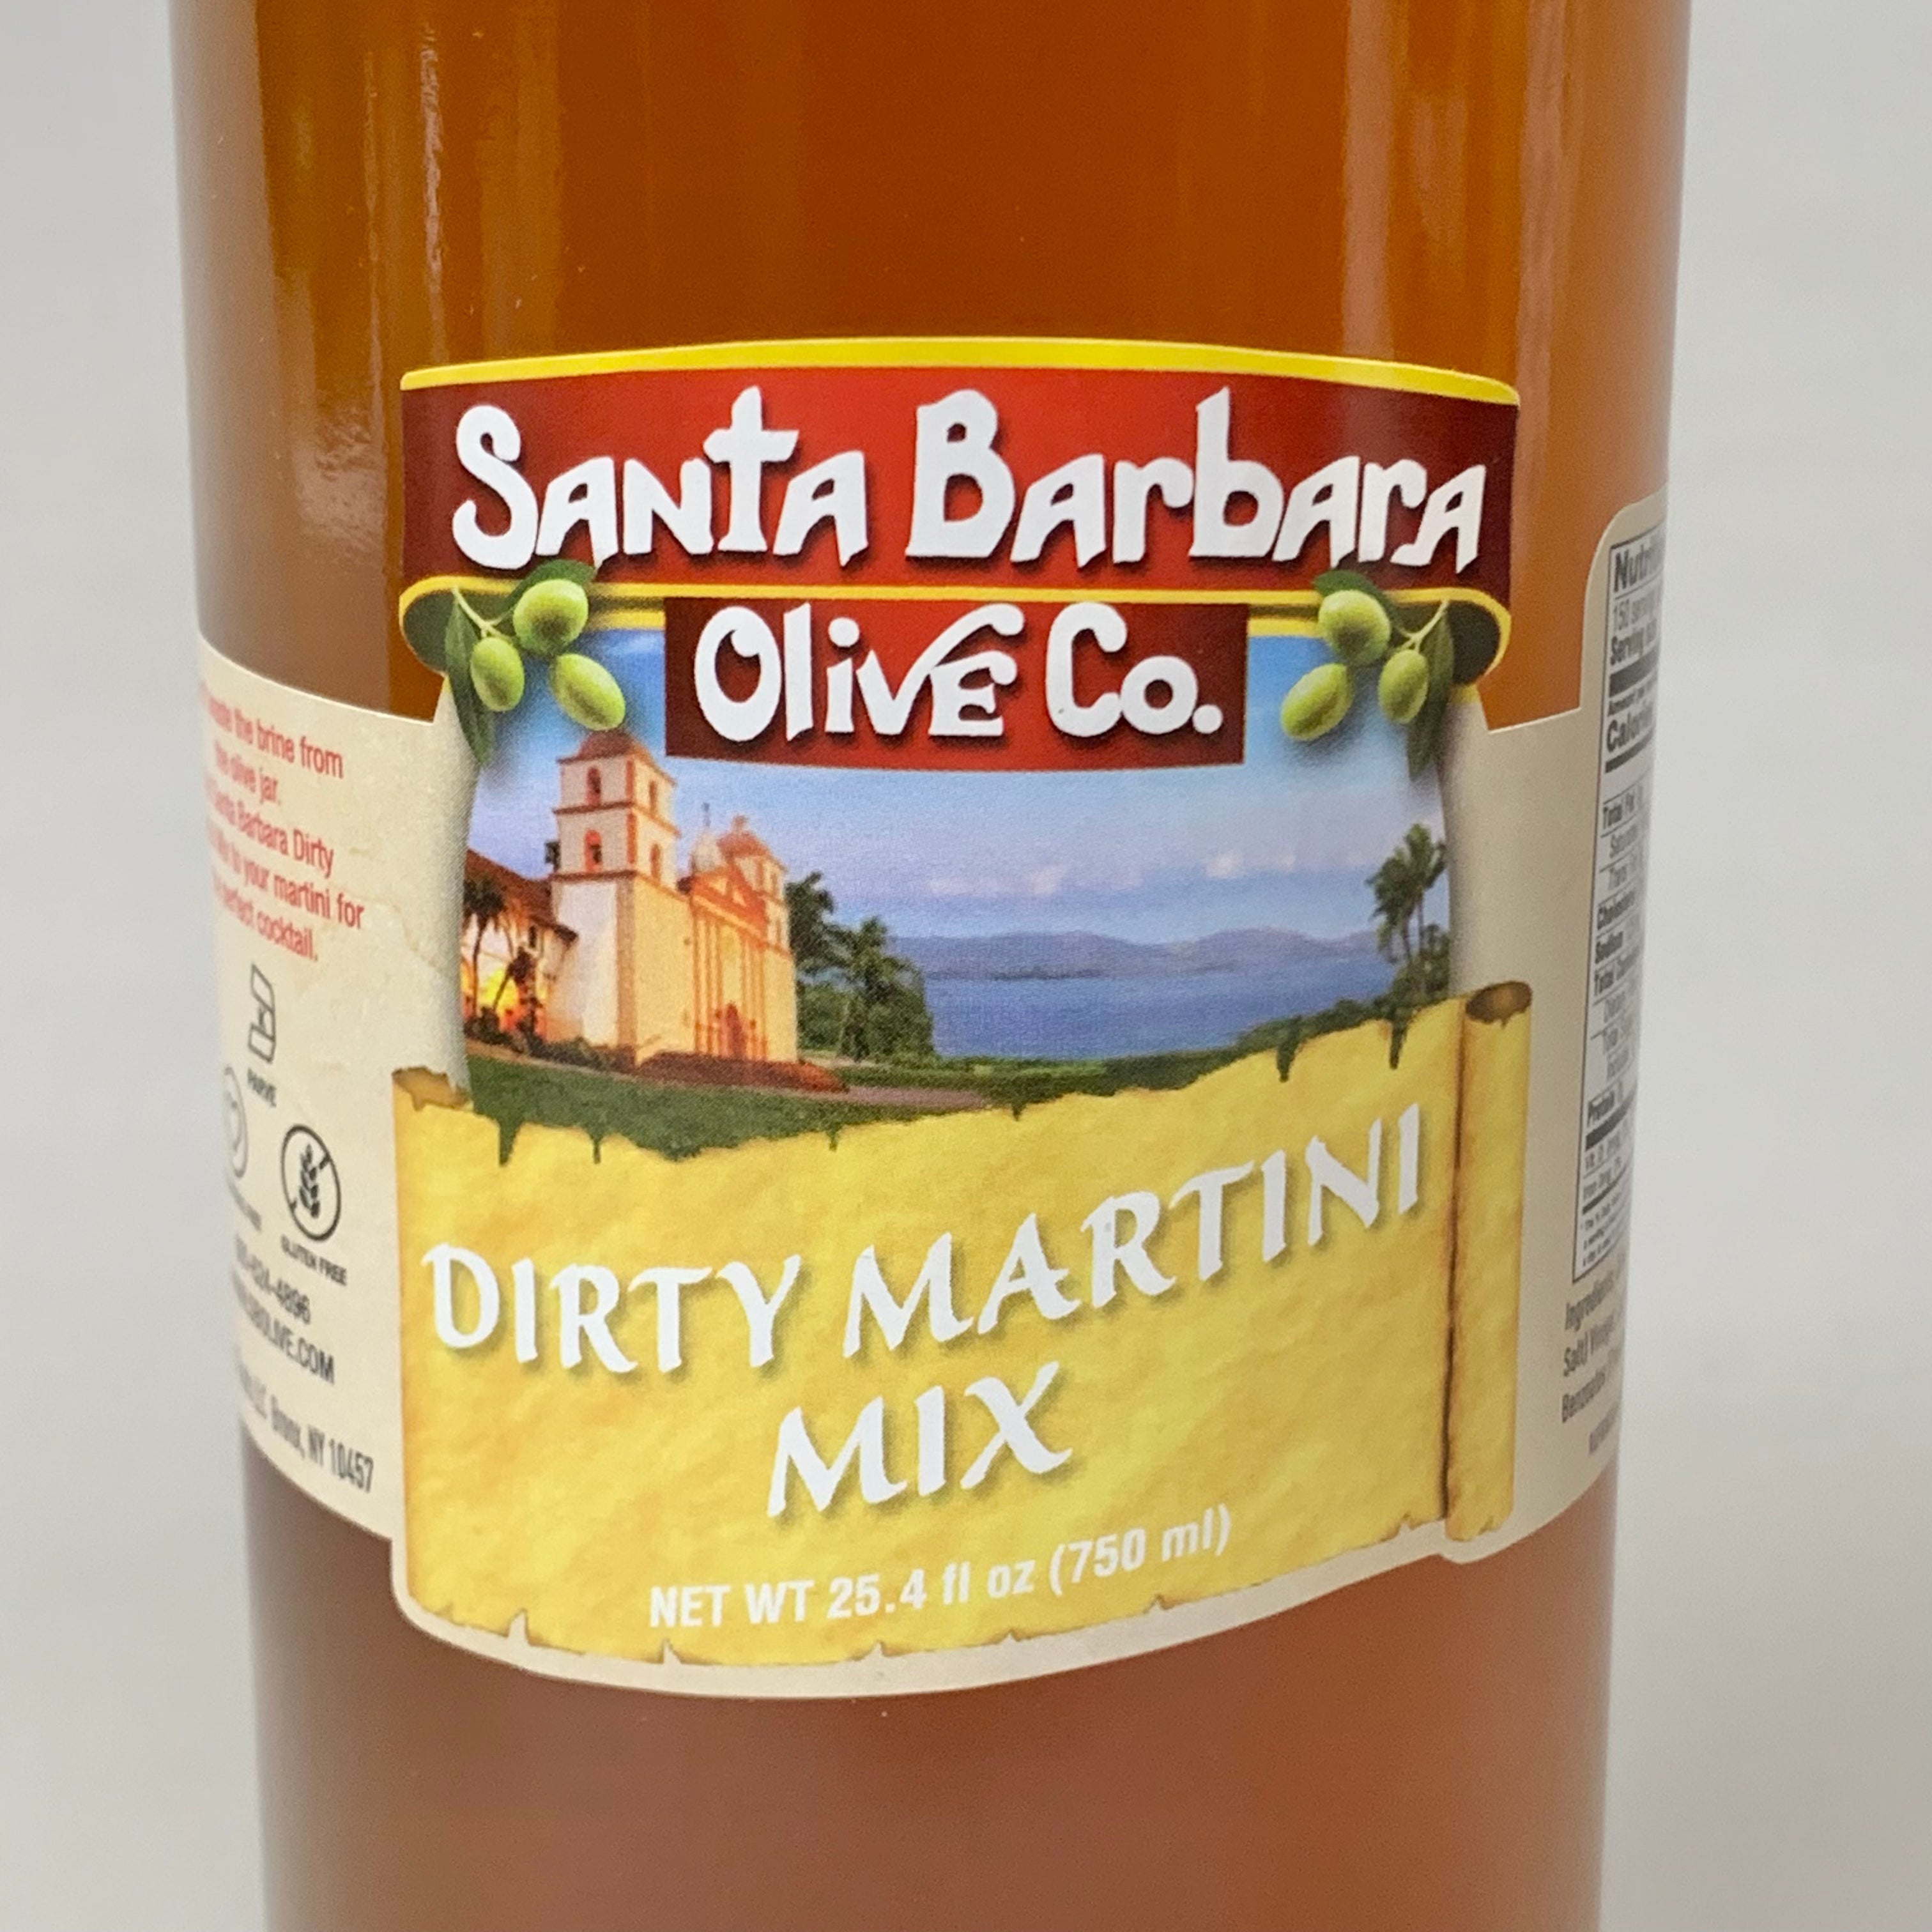 ZA@ SANTA BARBARA OLIVE CO Dirty Martini Mix 6-Pack 25.4 fl oz BB 03/24 55-200-30 (New) E